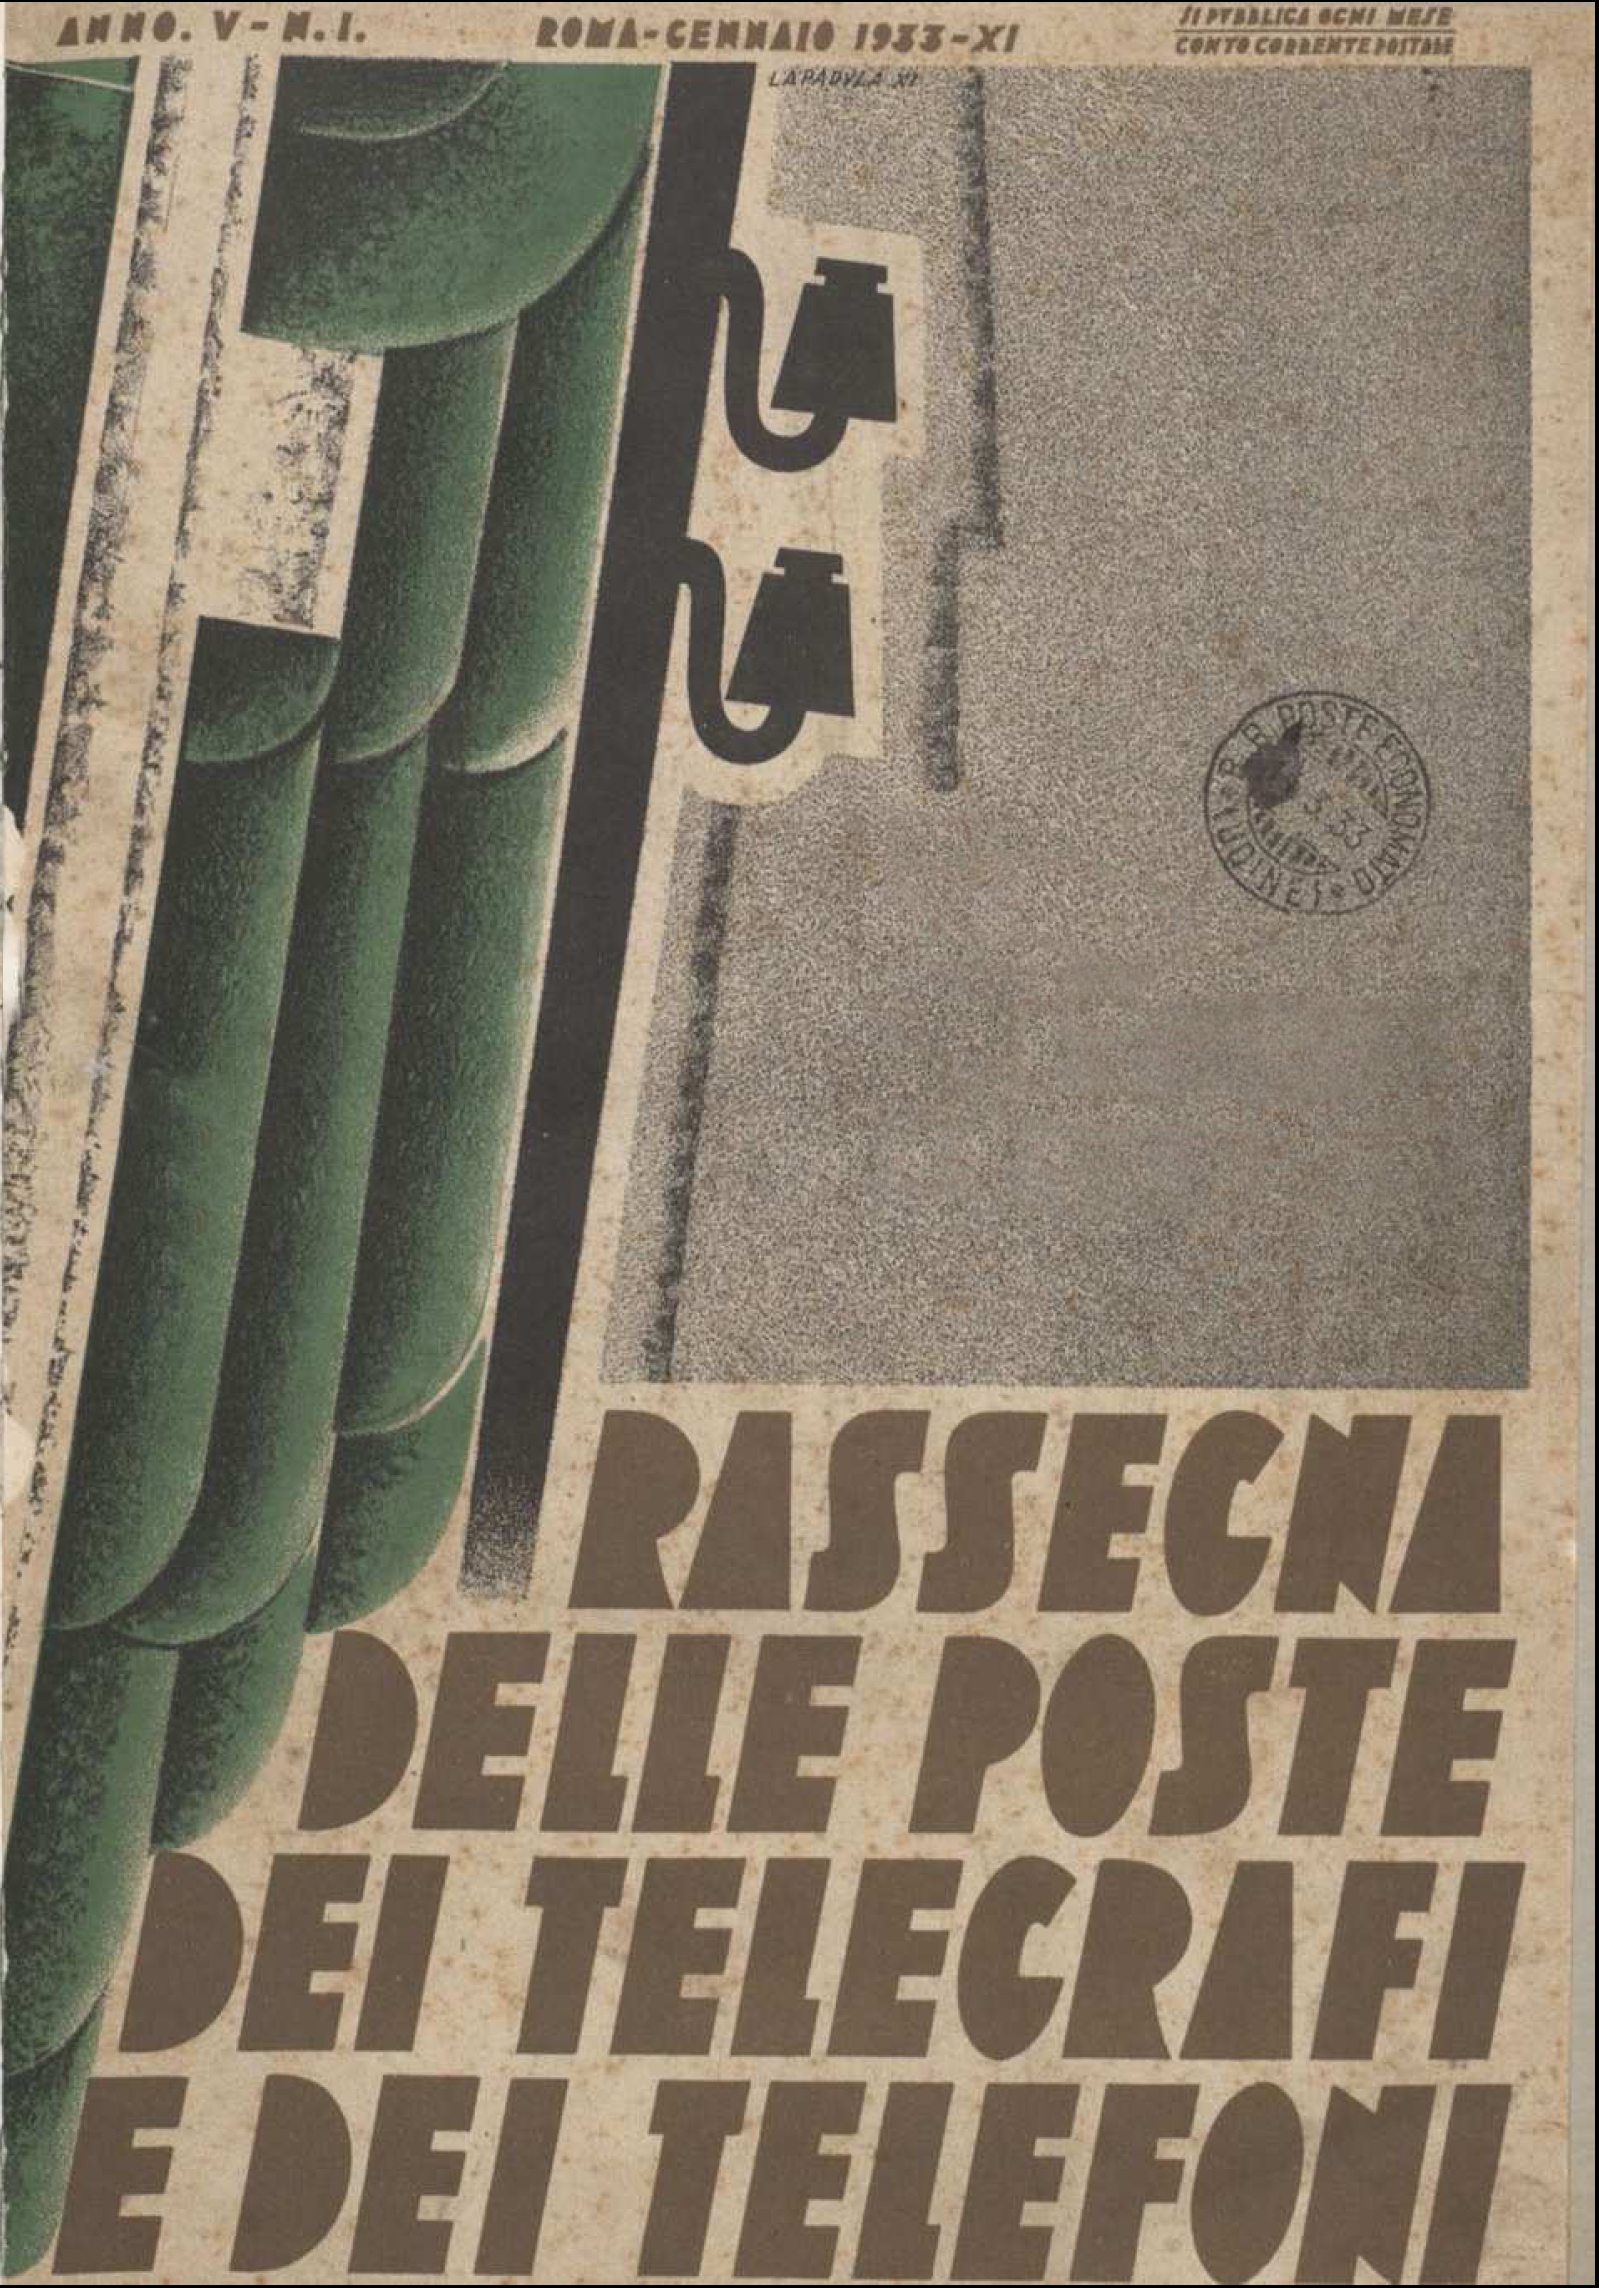 Pubblicazioni dell’Amministrazione postale italiana